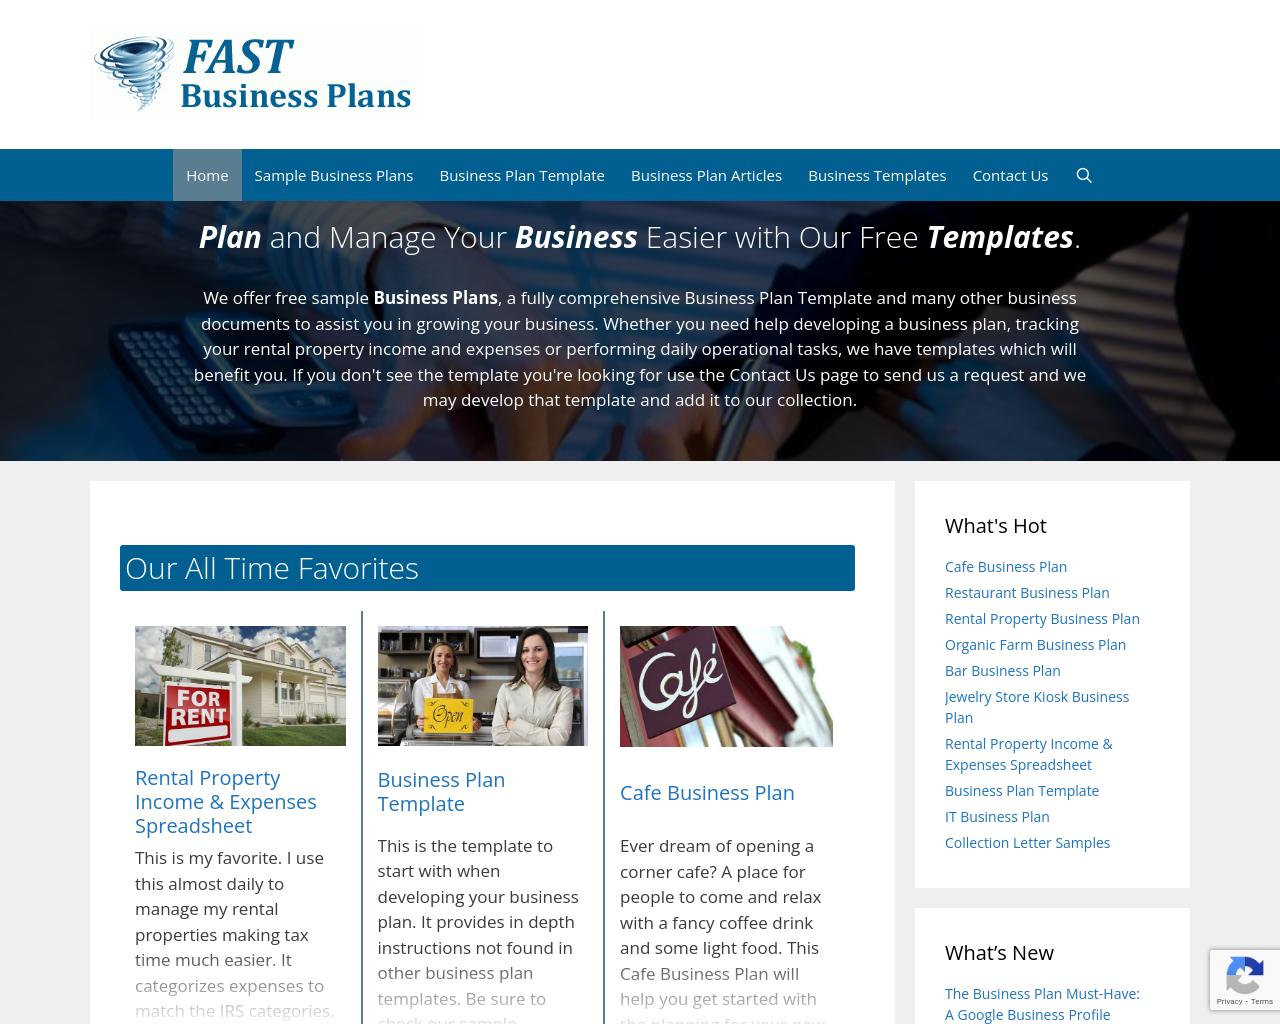 fastbusinessplans.com